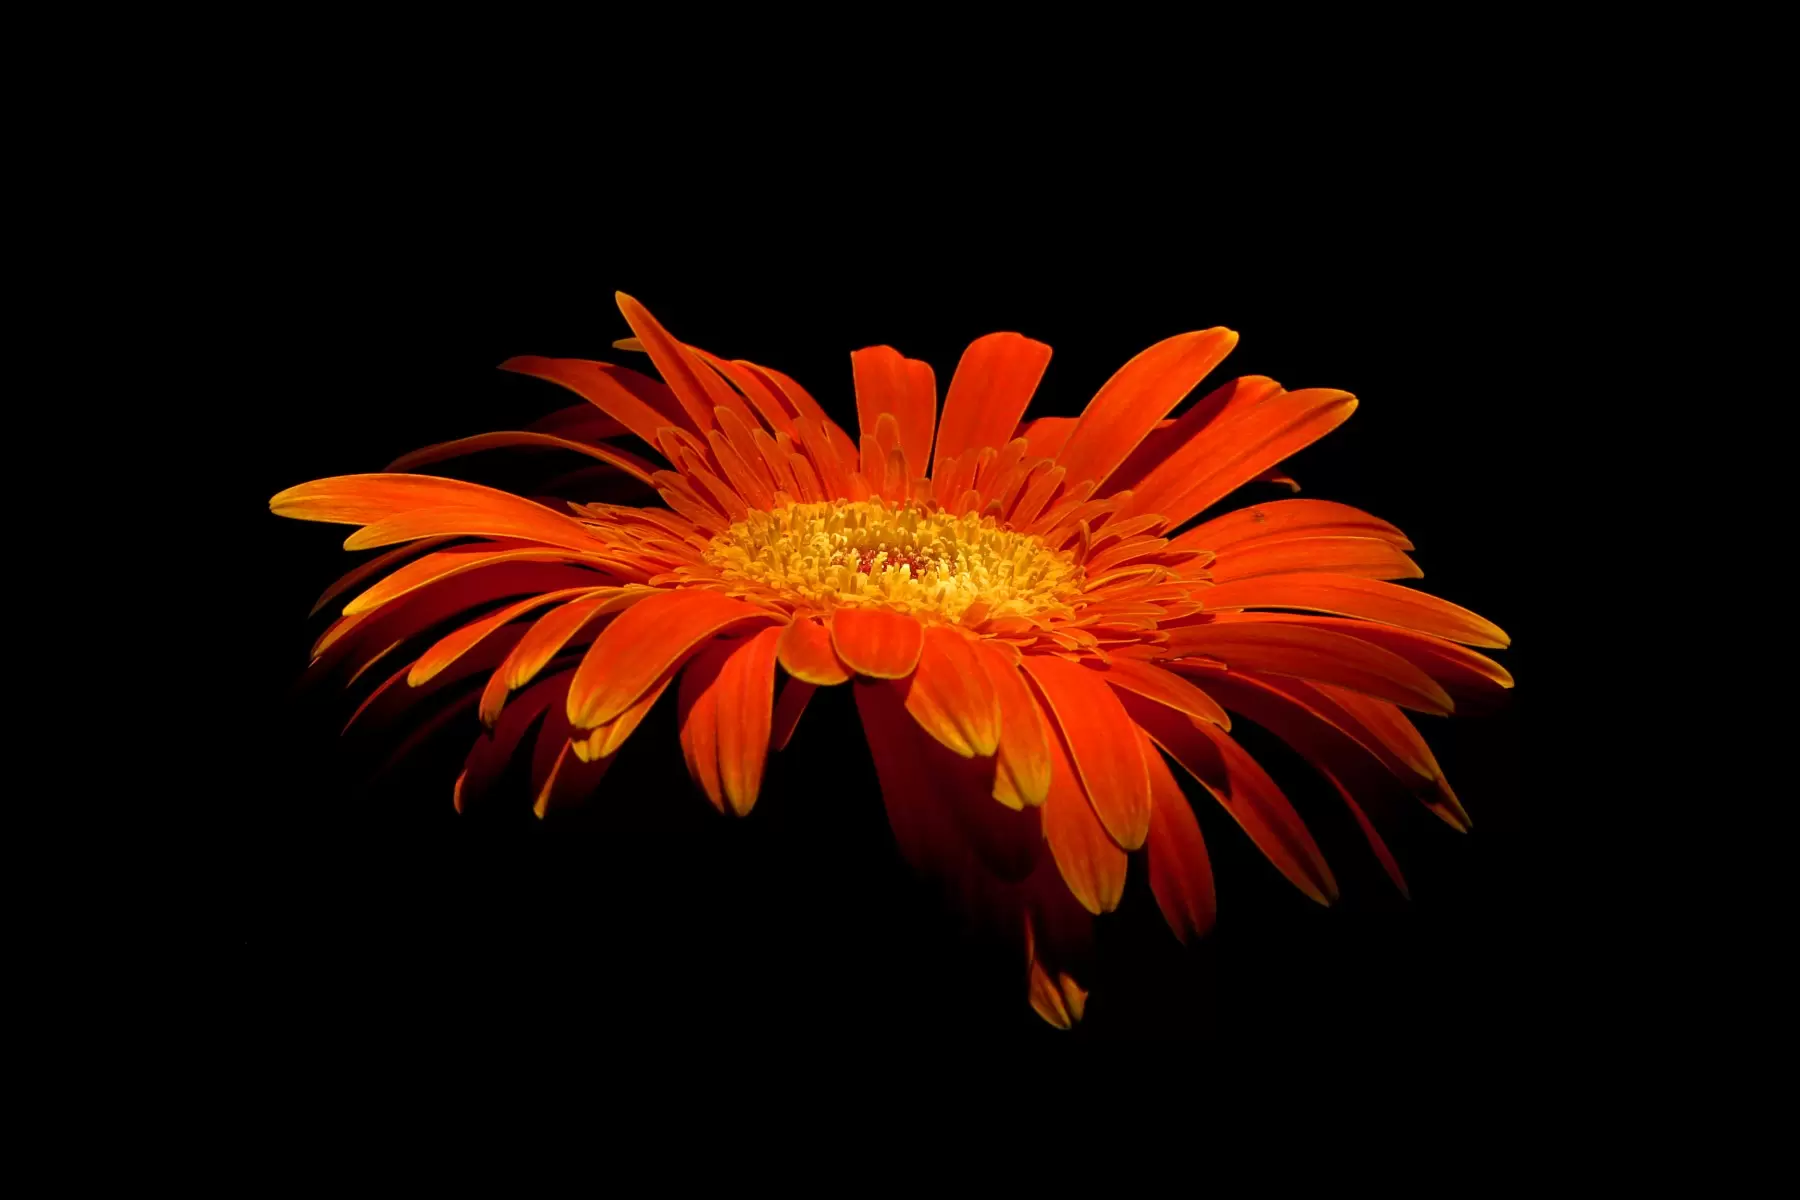 פרח - ניקולאי טטרצ'וק - טבע דומם בצילום תמונות בחלקים  - מק''ט: 126000